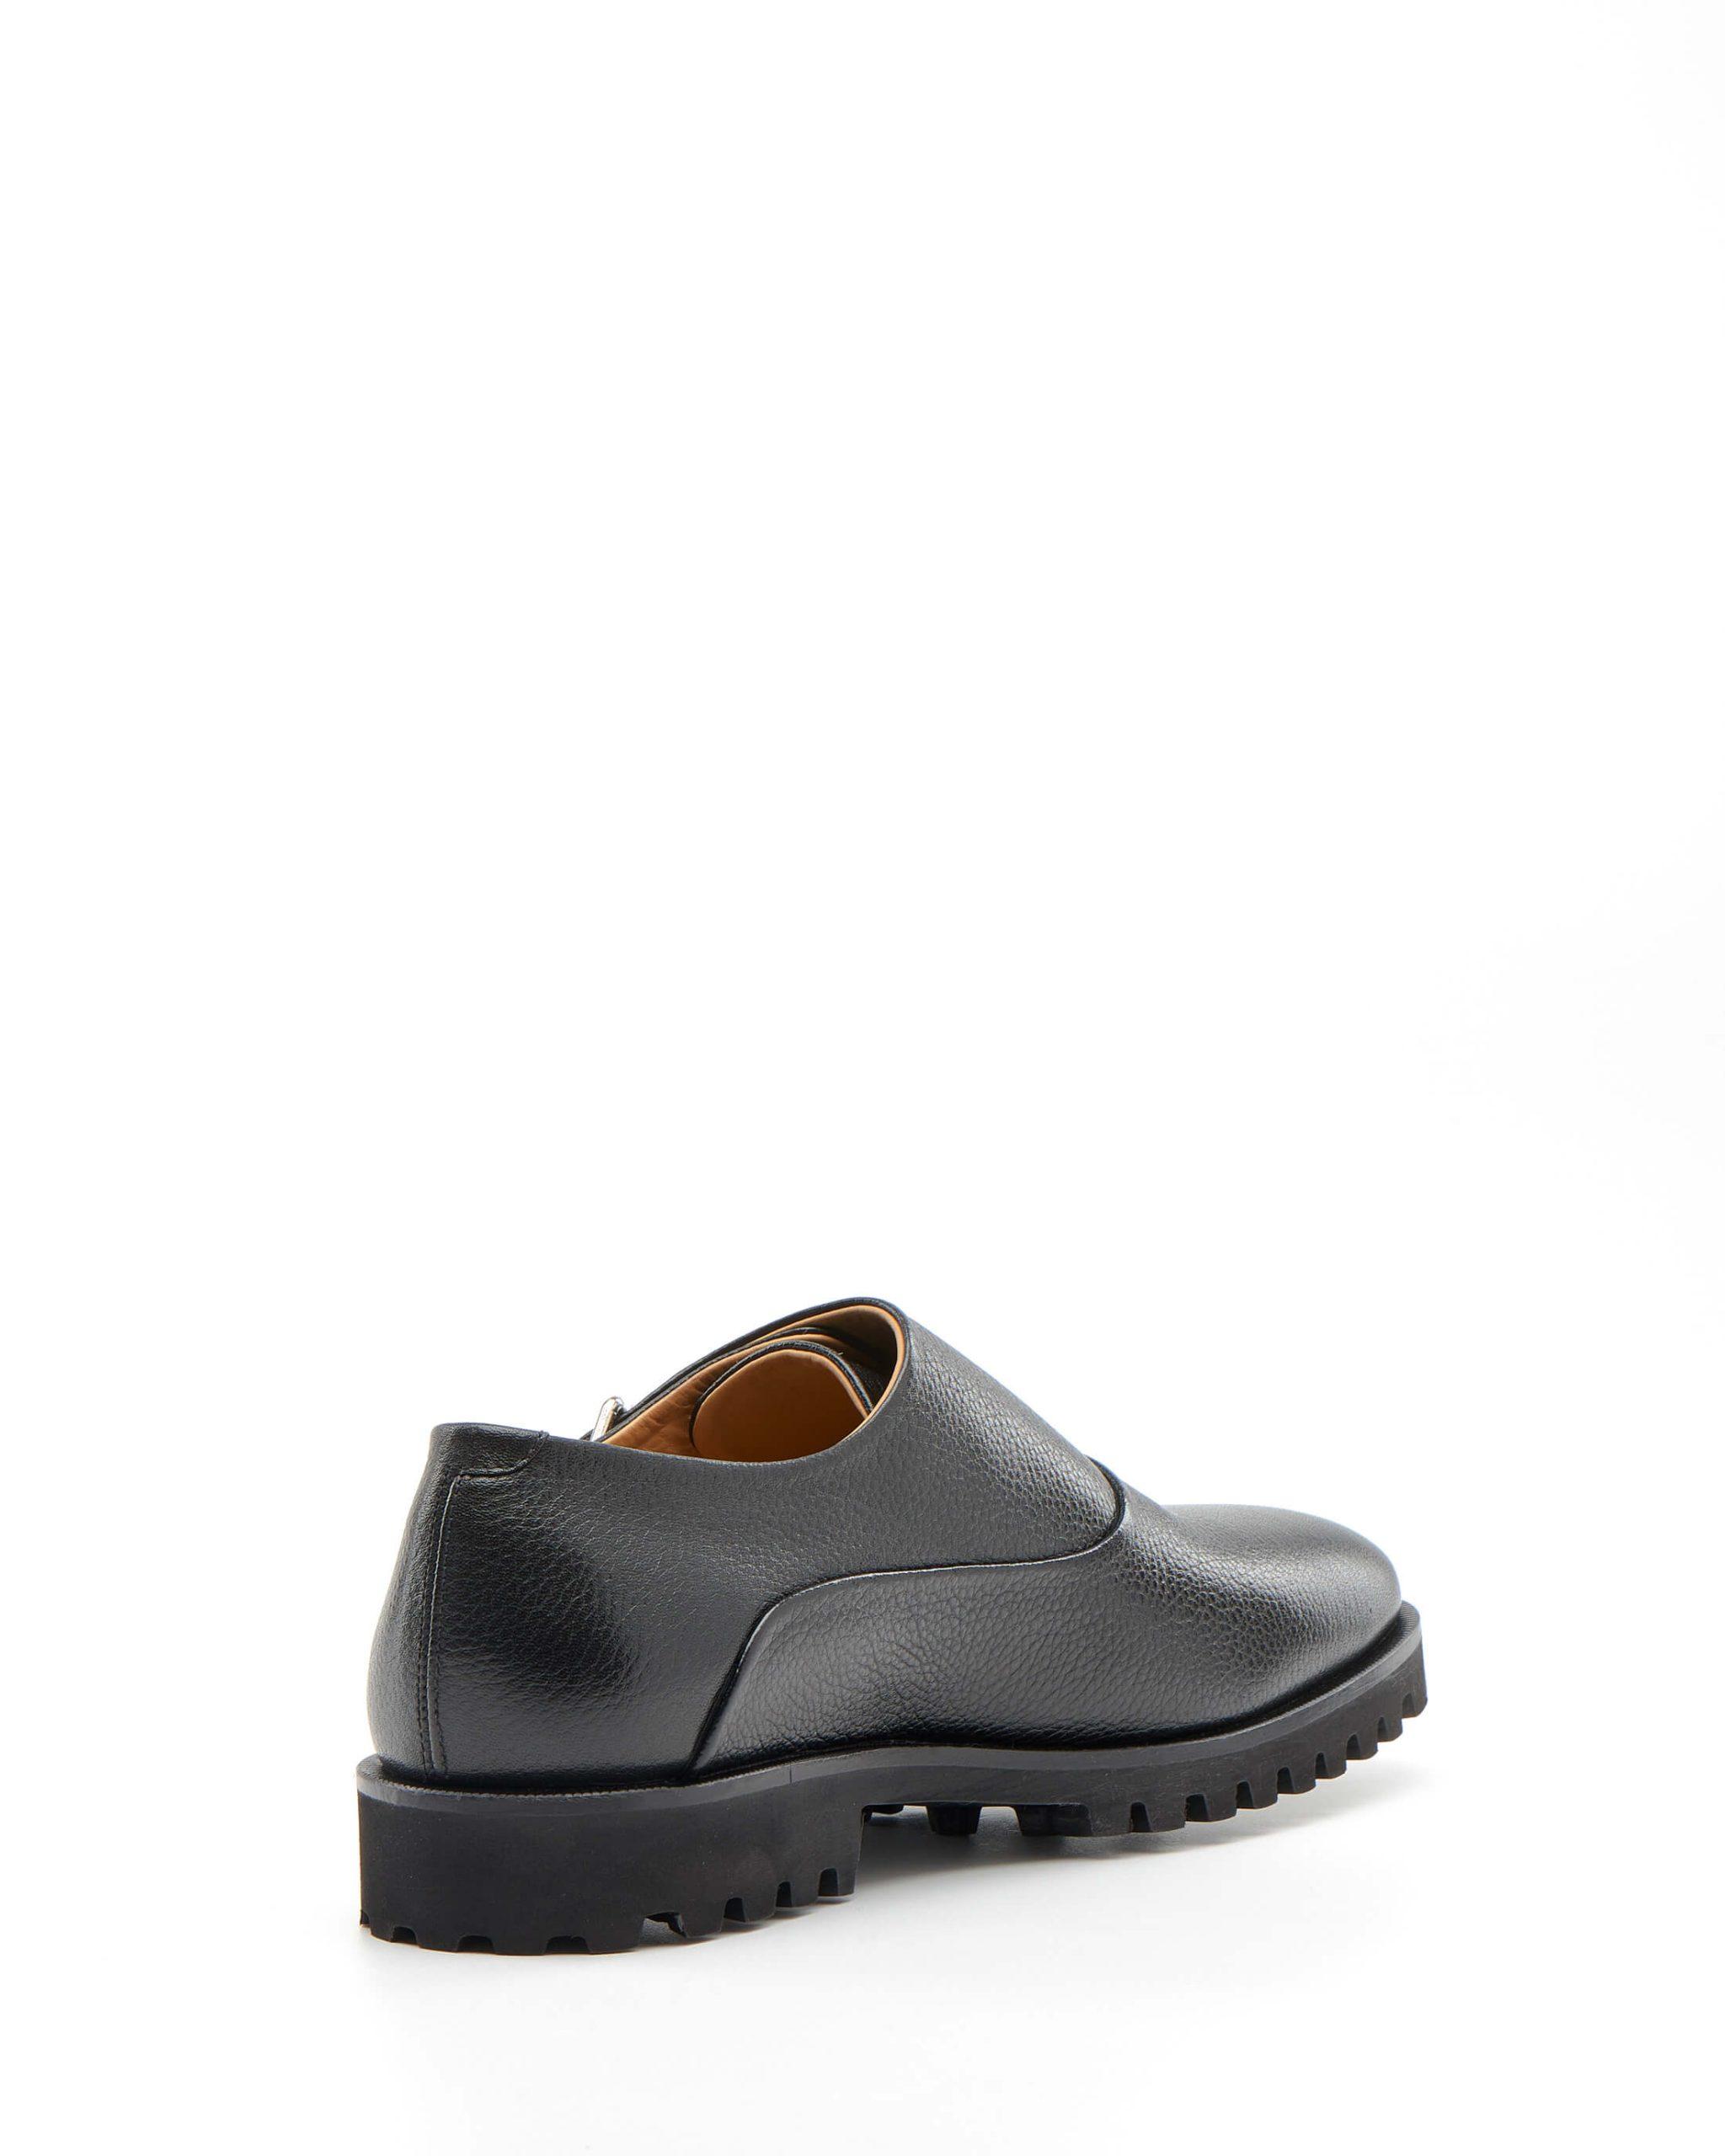 Luis Onofre Portuguese Shoes FW22 – HS0804_01 – Cozy Black-3